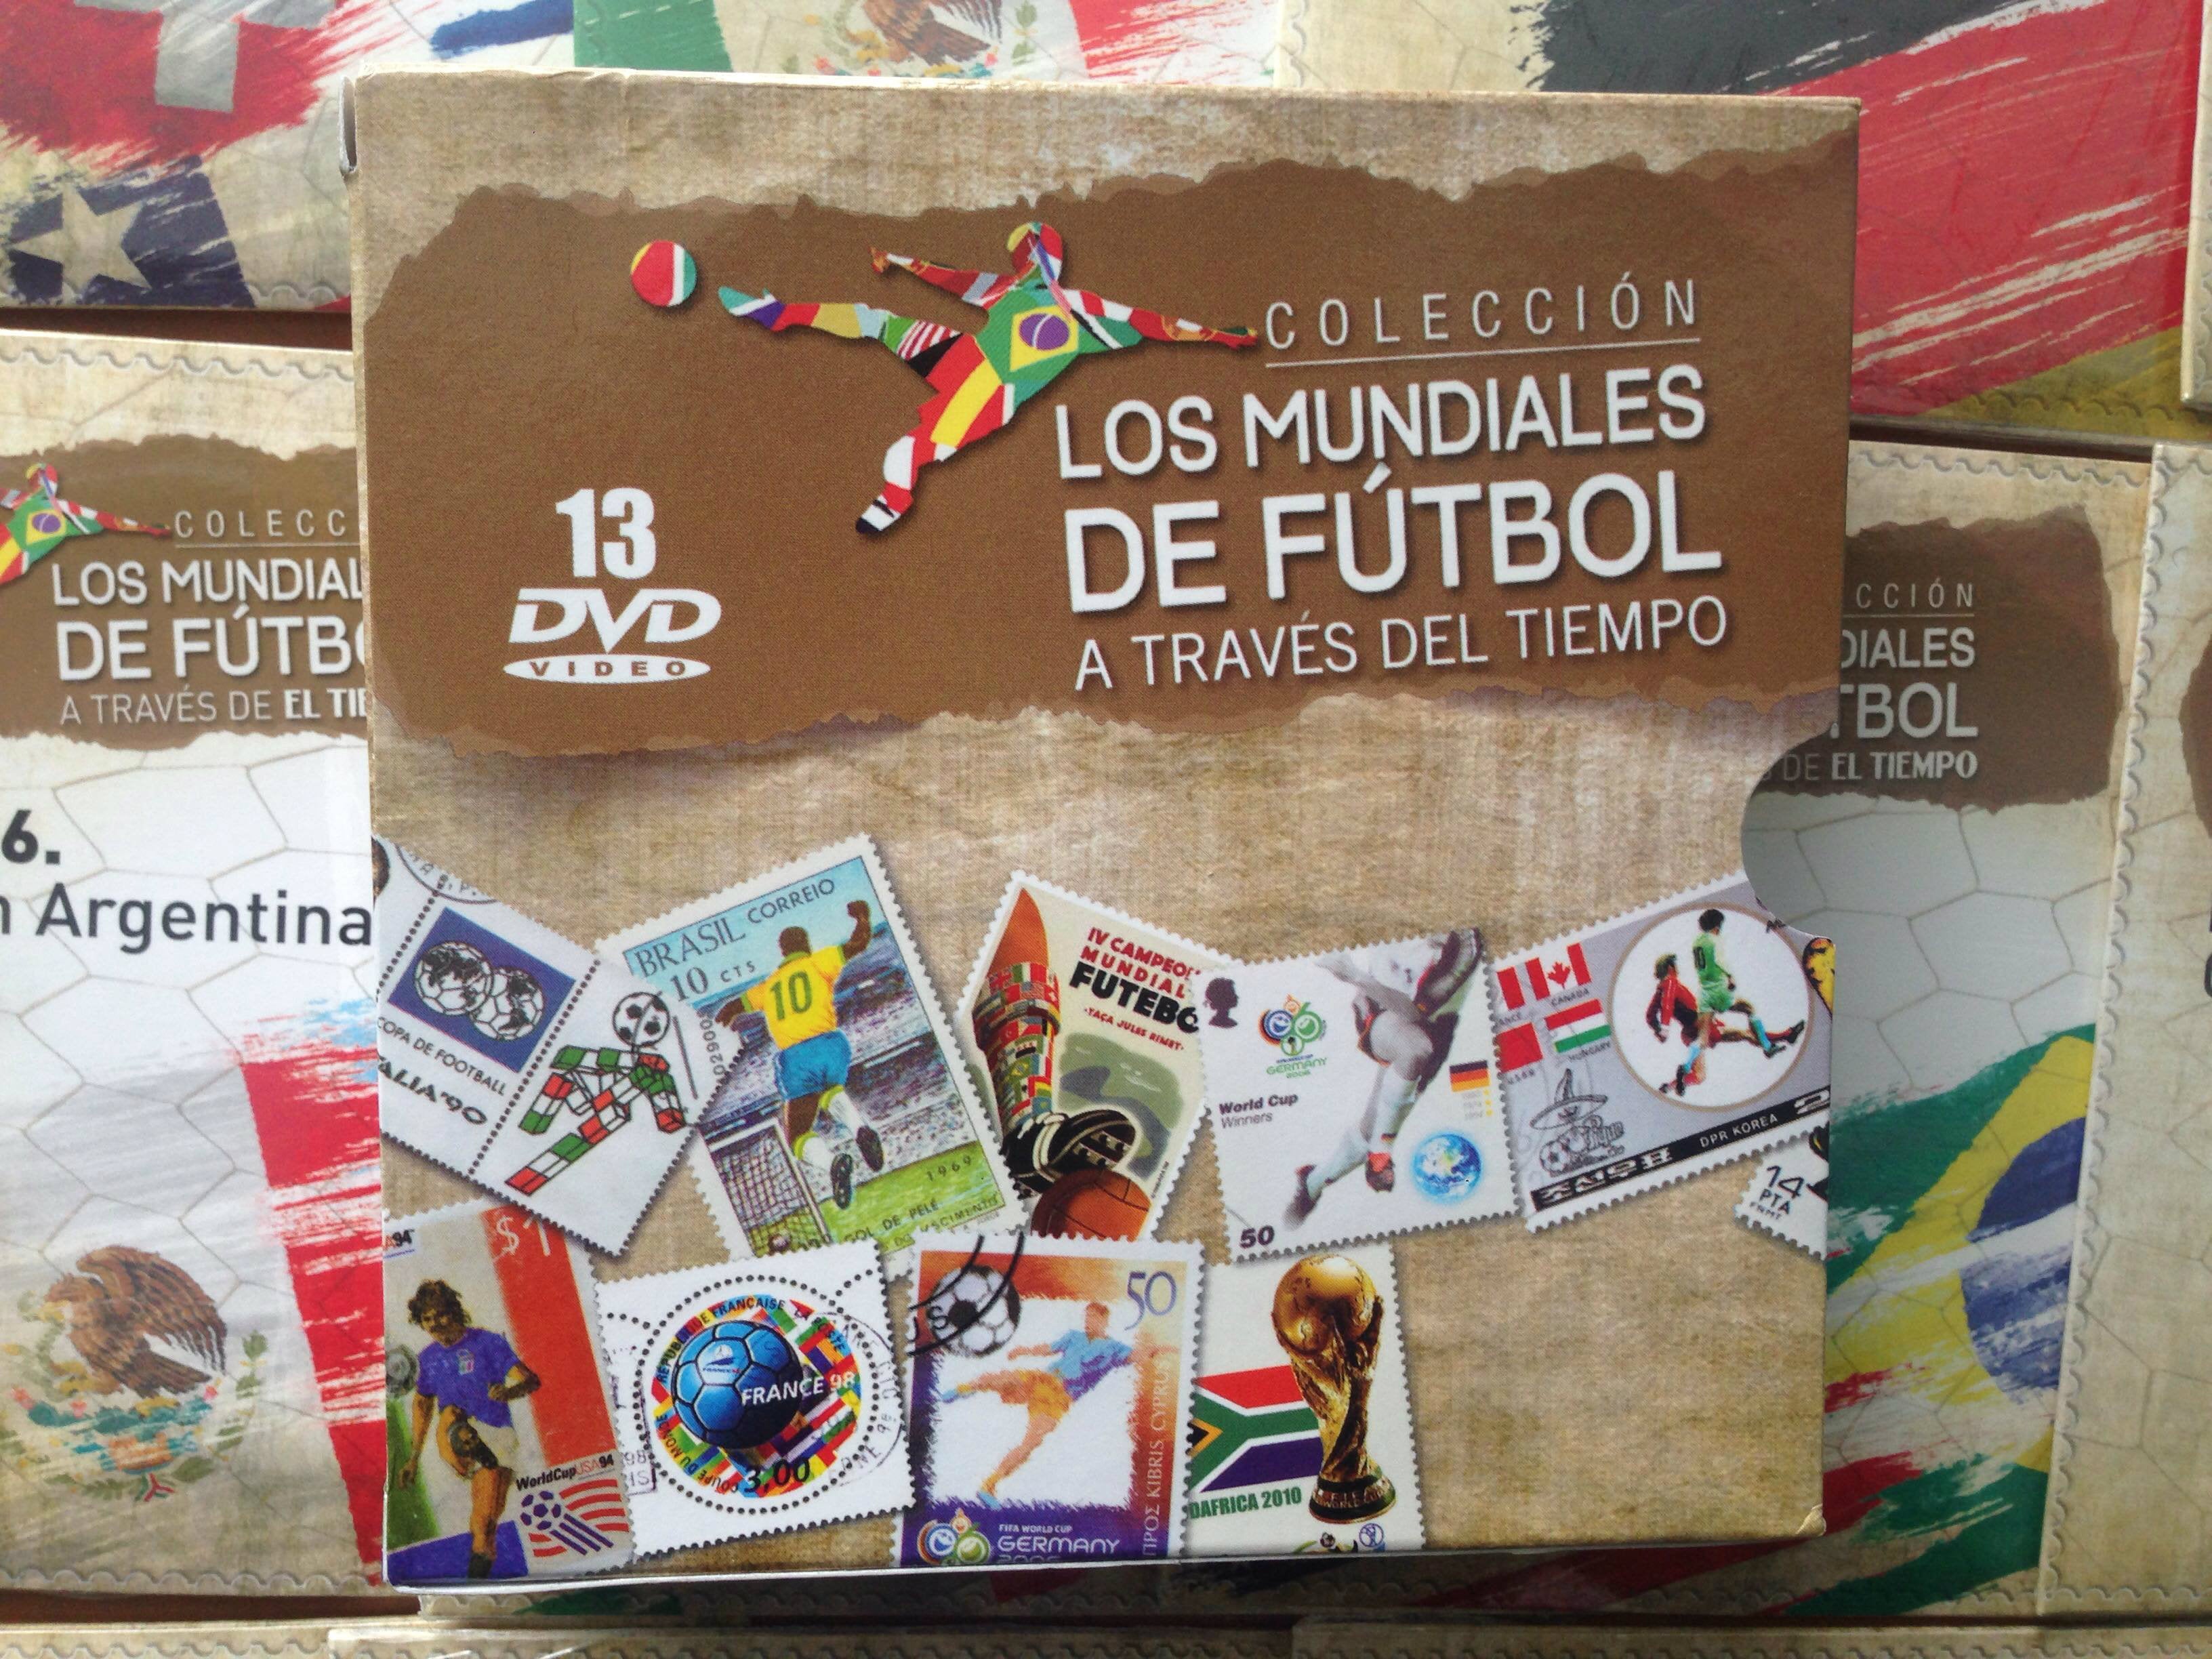 DVD x13 Colección los mundiales de fútbol a través del tiempo